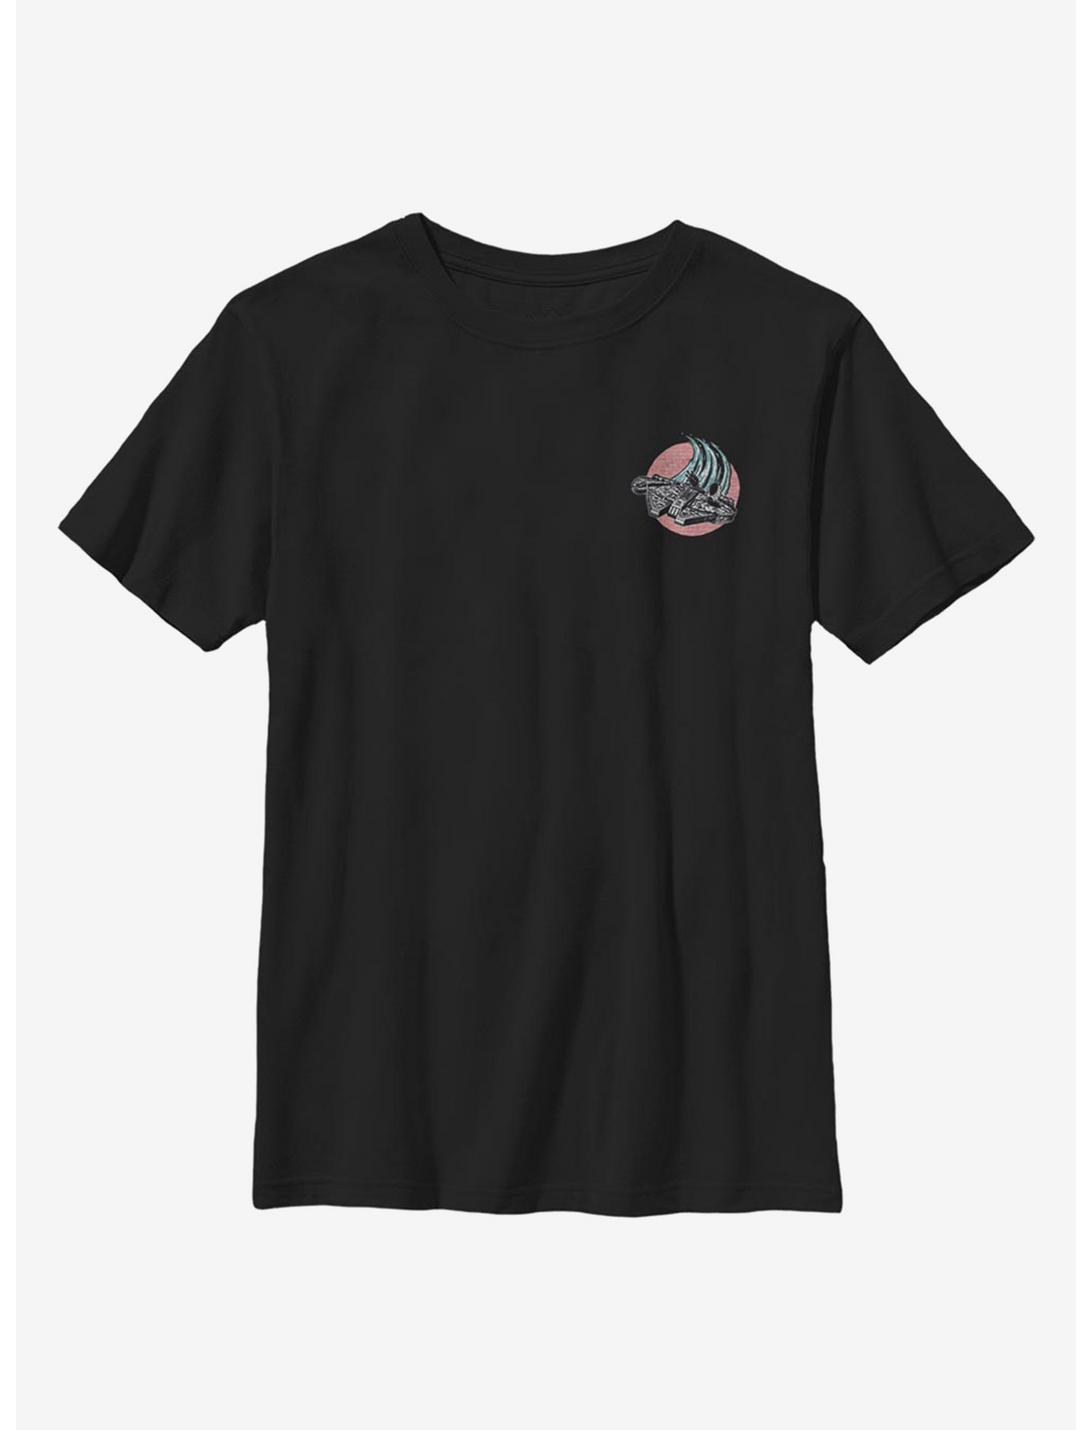 Star Wars Falcon Flying Circle Youth T-Shirt, BLACK, hi-res